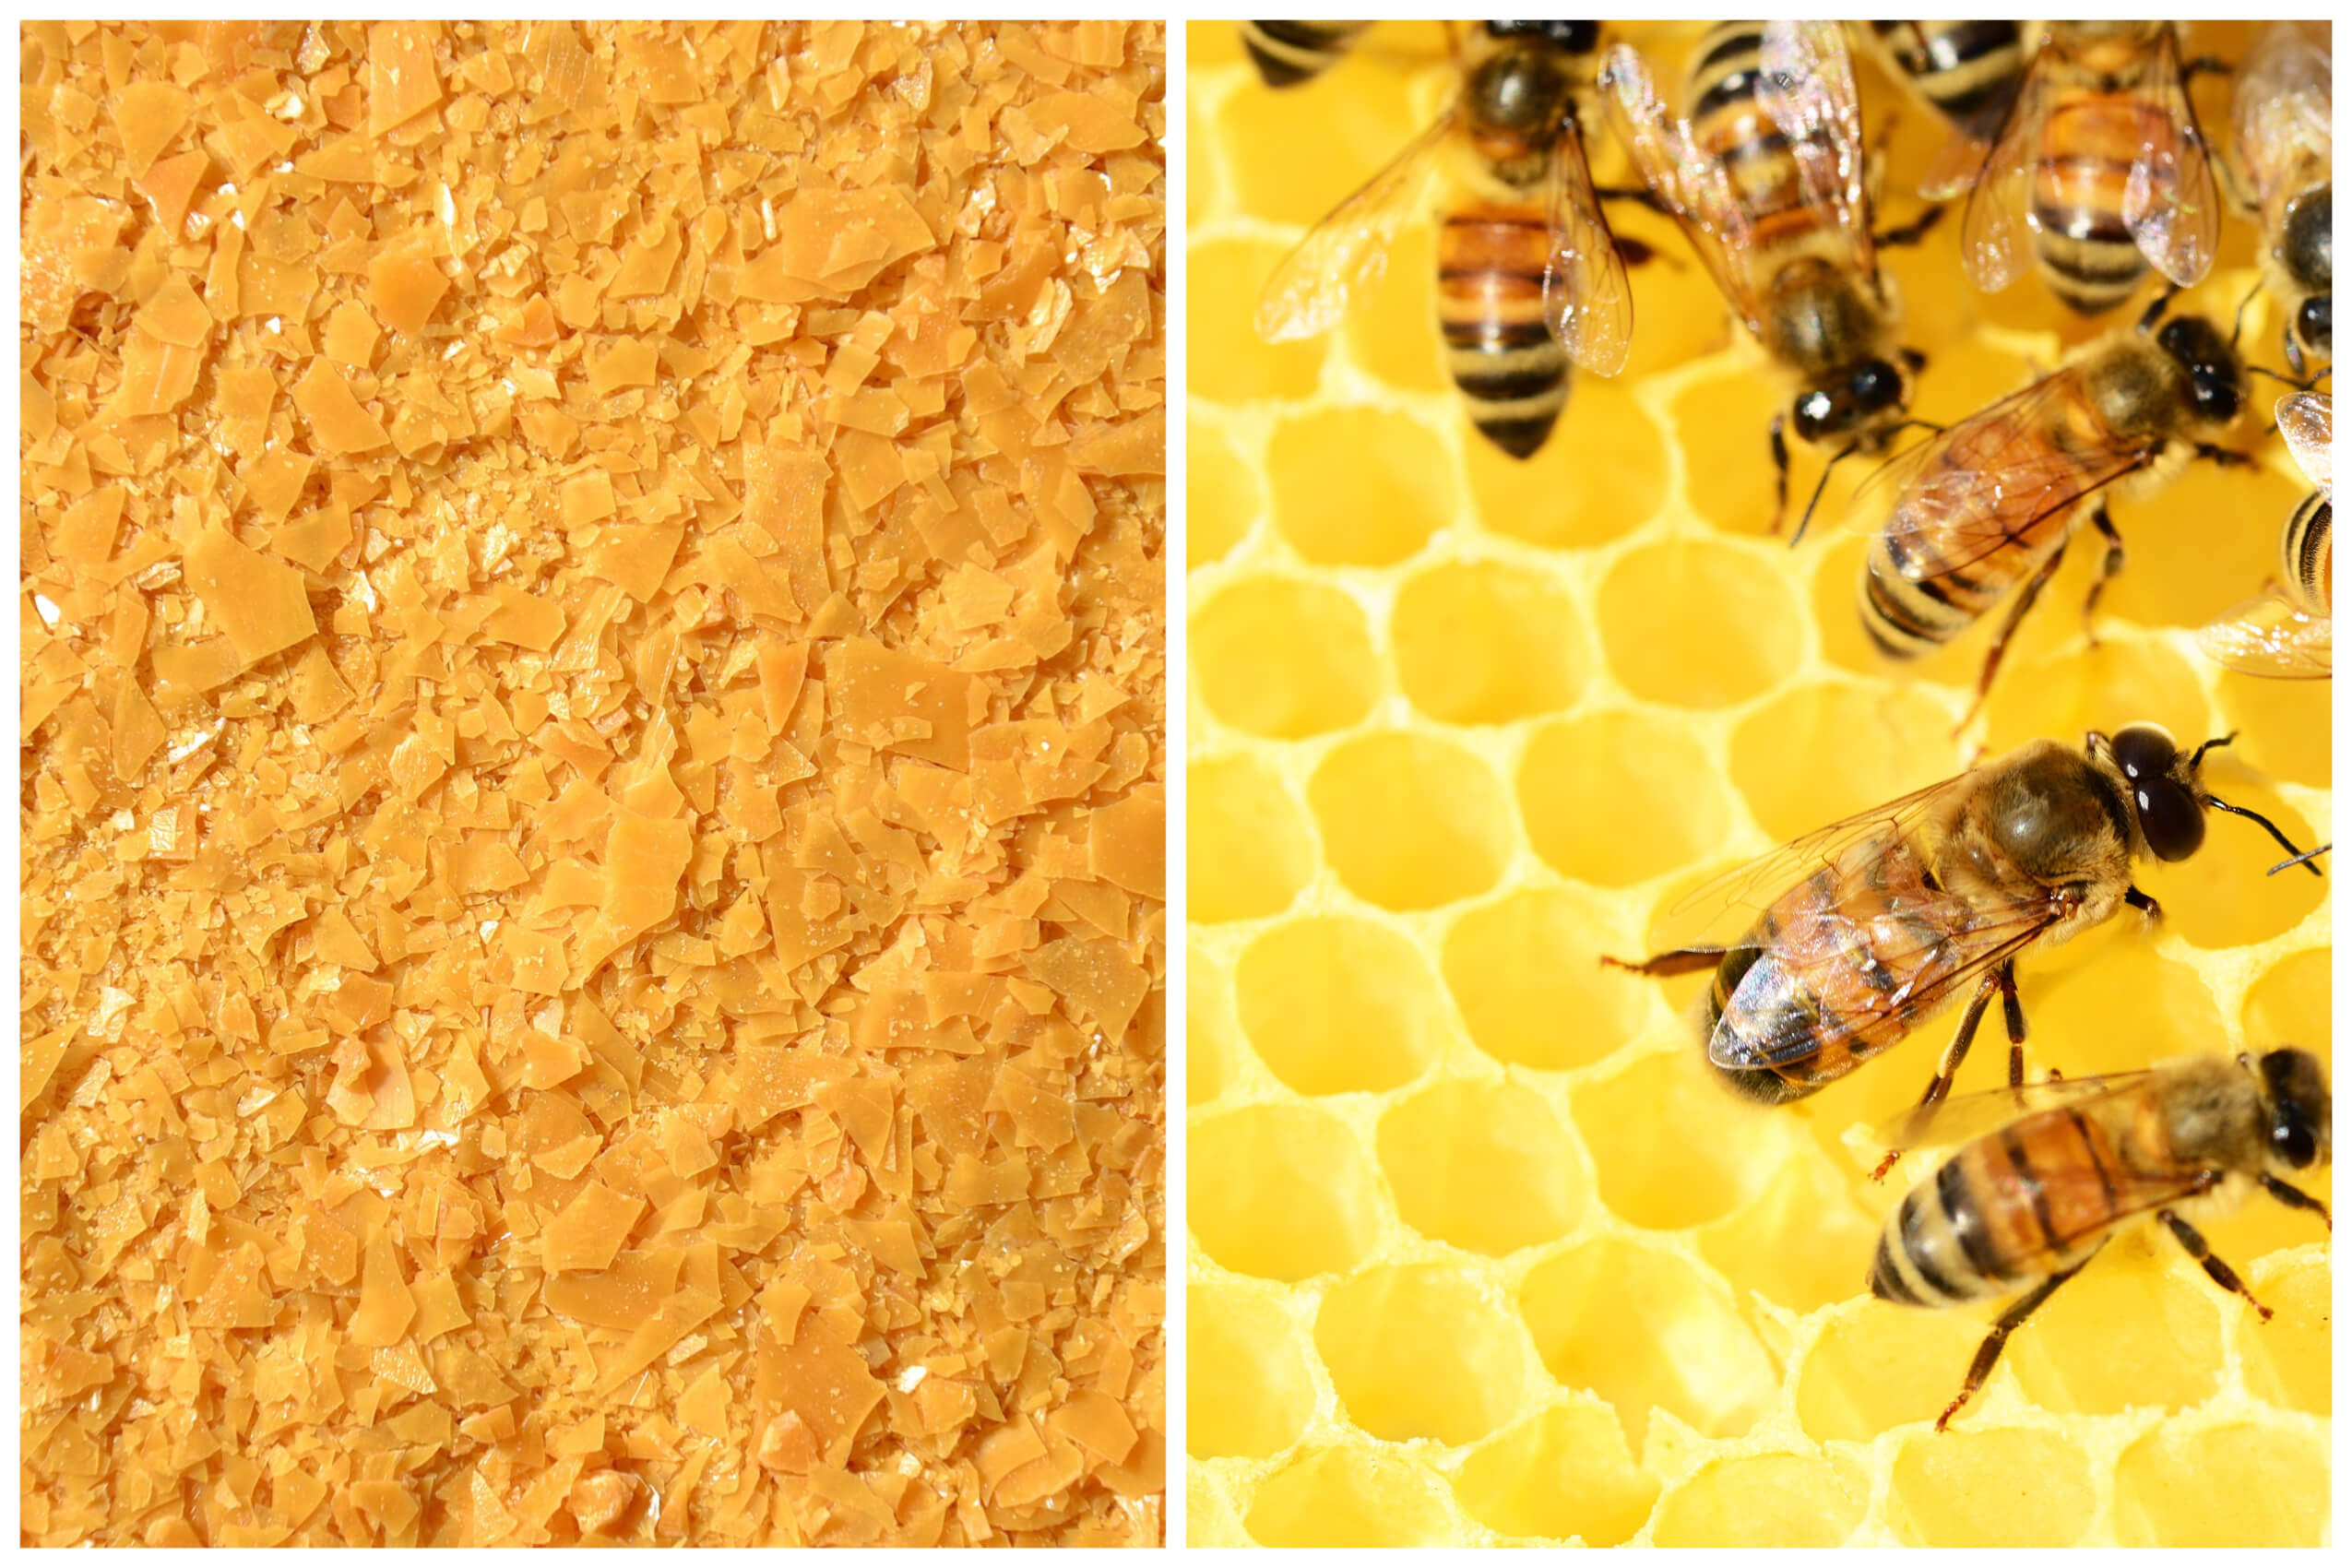 brazilian wax and bees wax